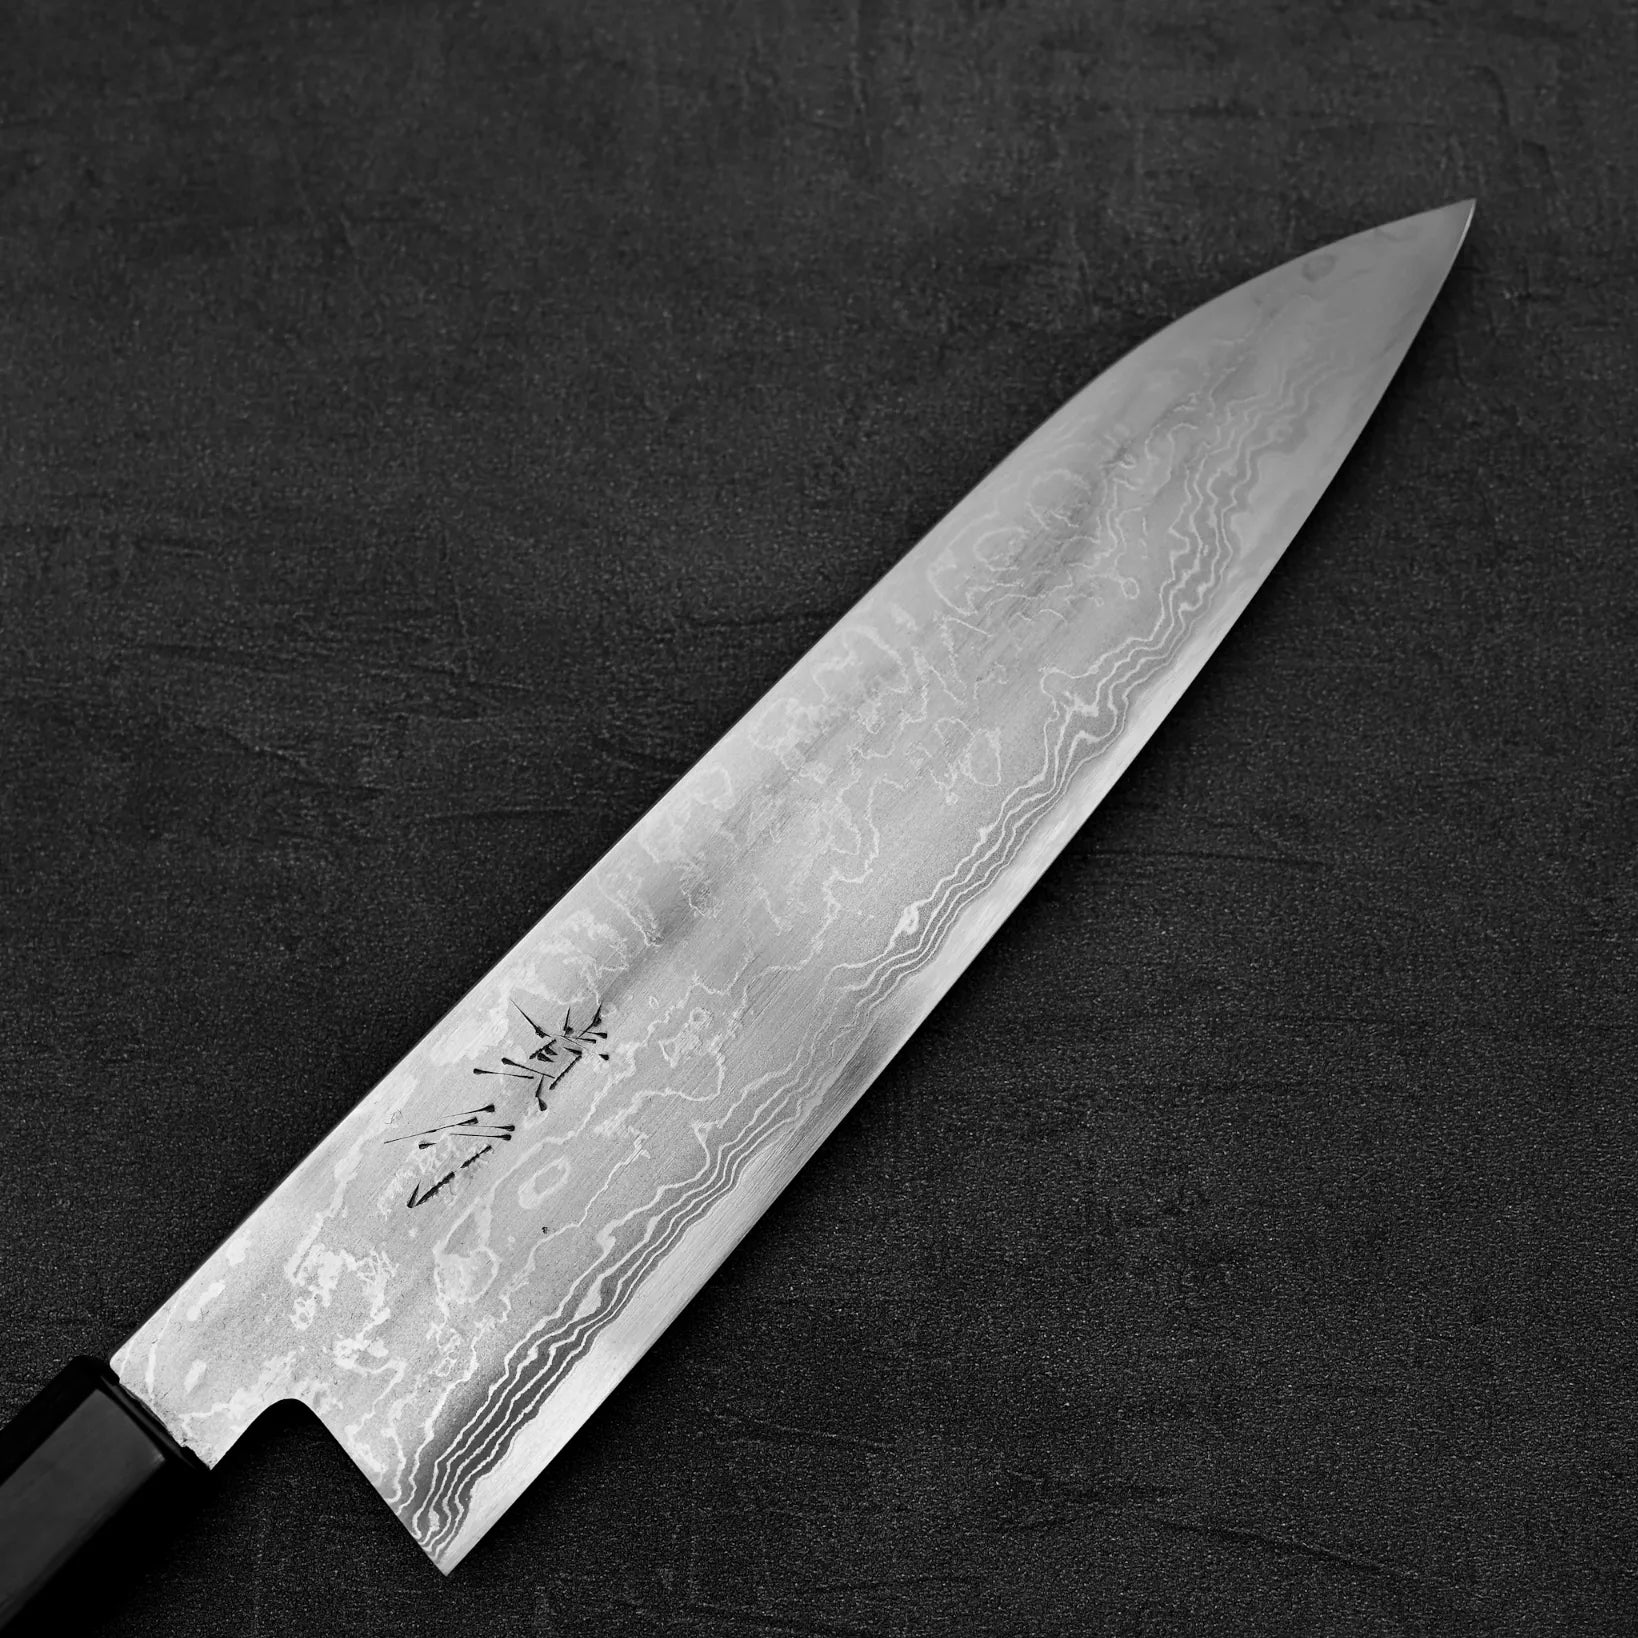 Close up view of Takayuki Iwai aogami#2 damascus 240mm gyuto knife